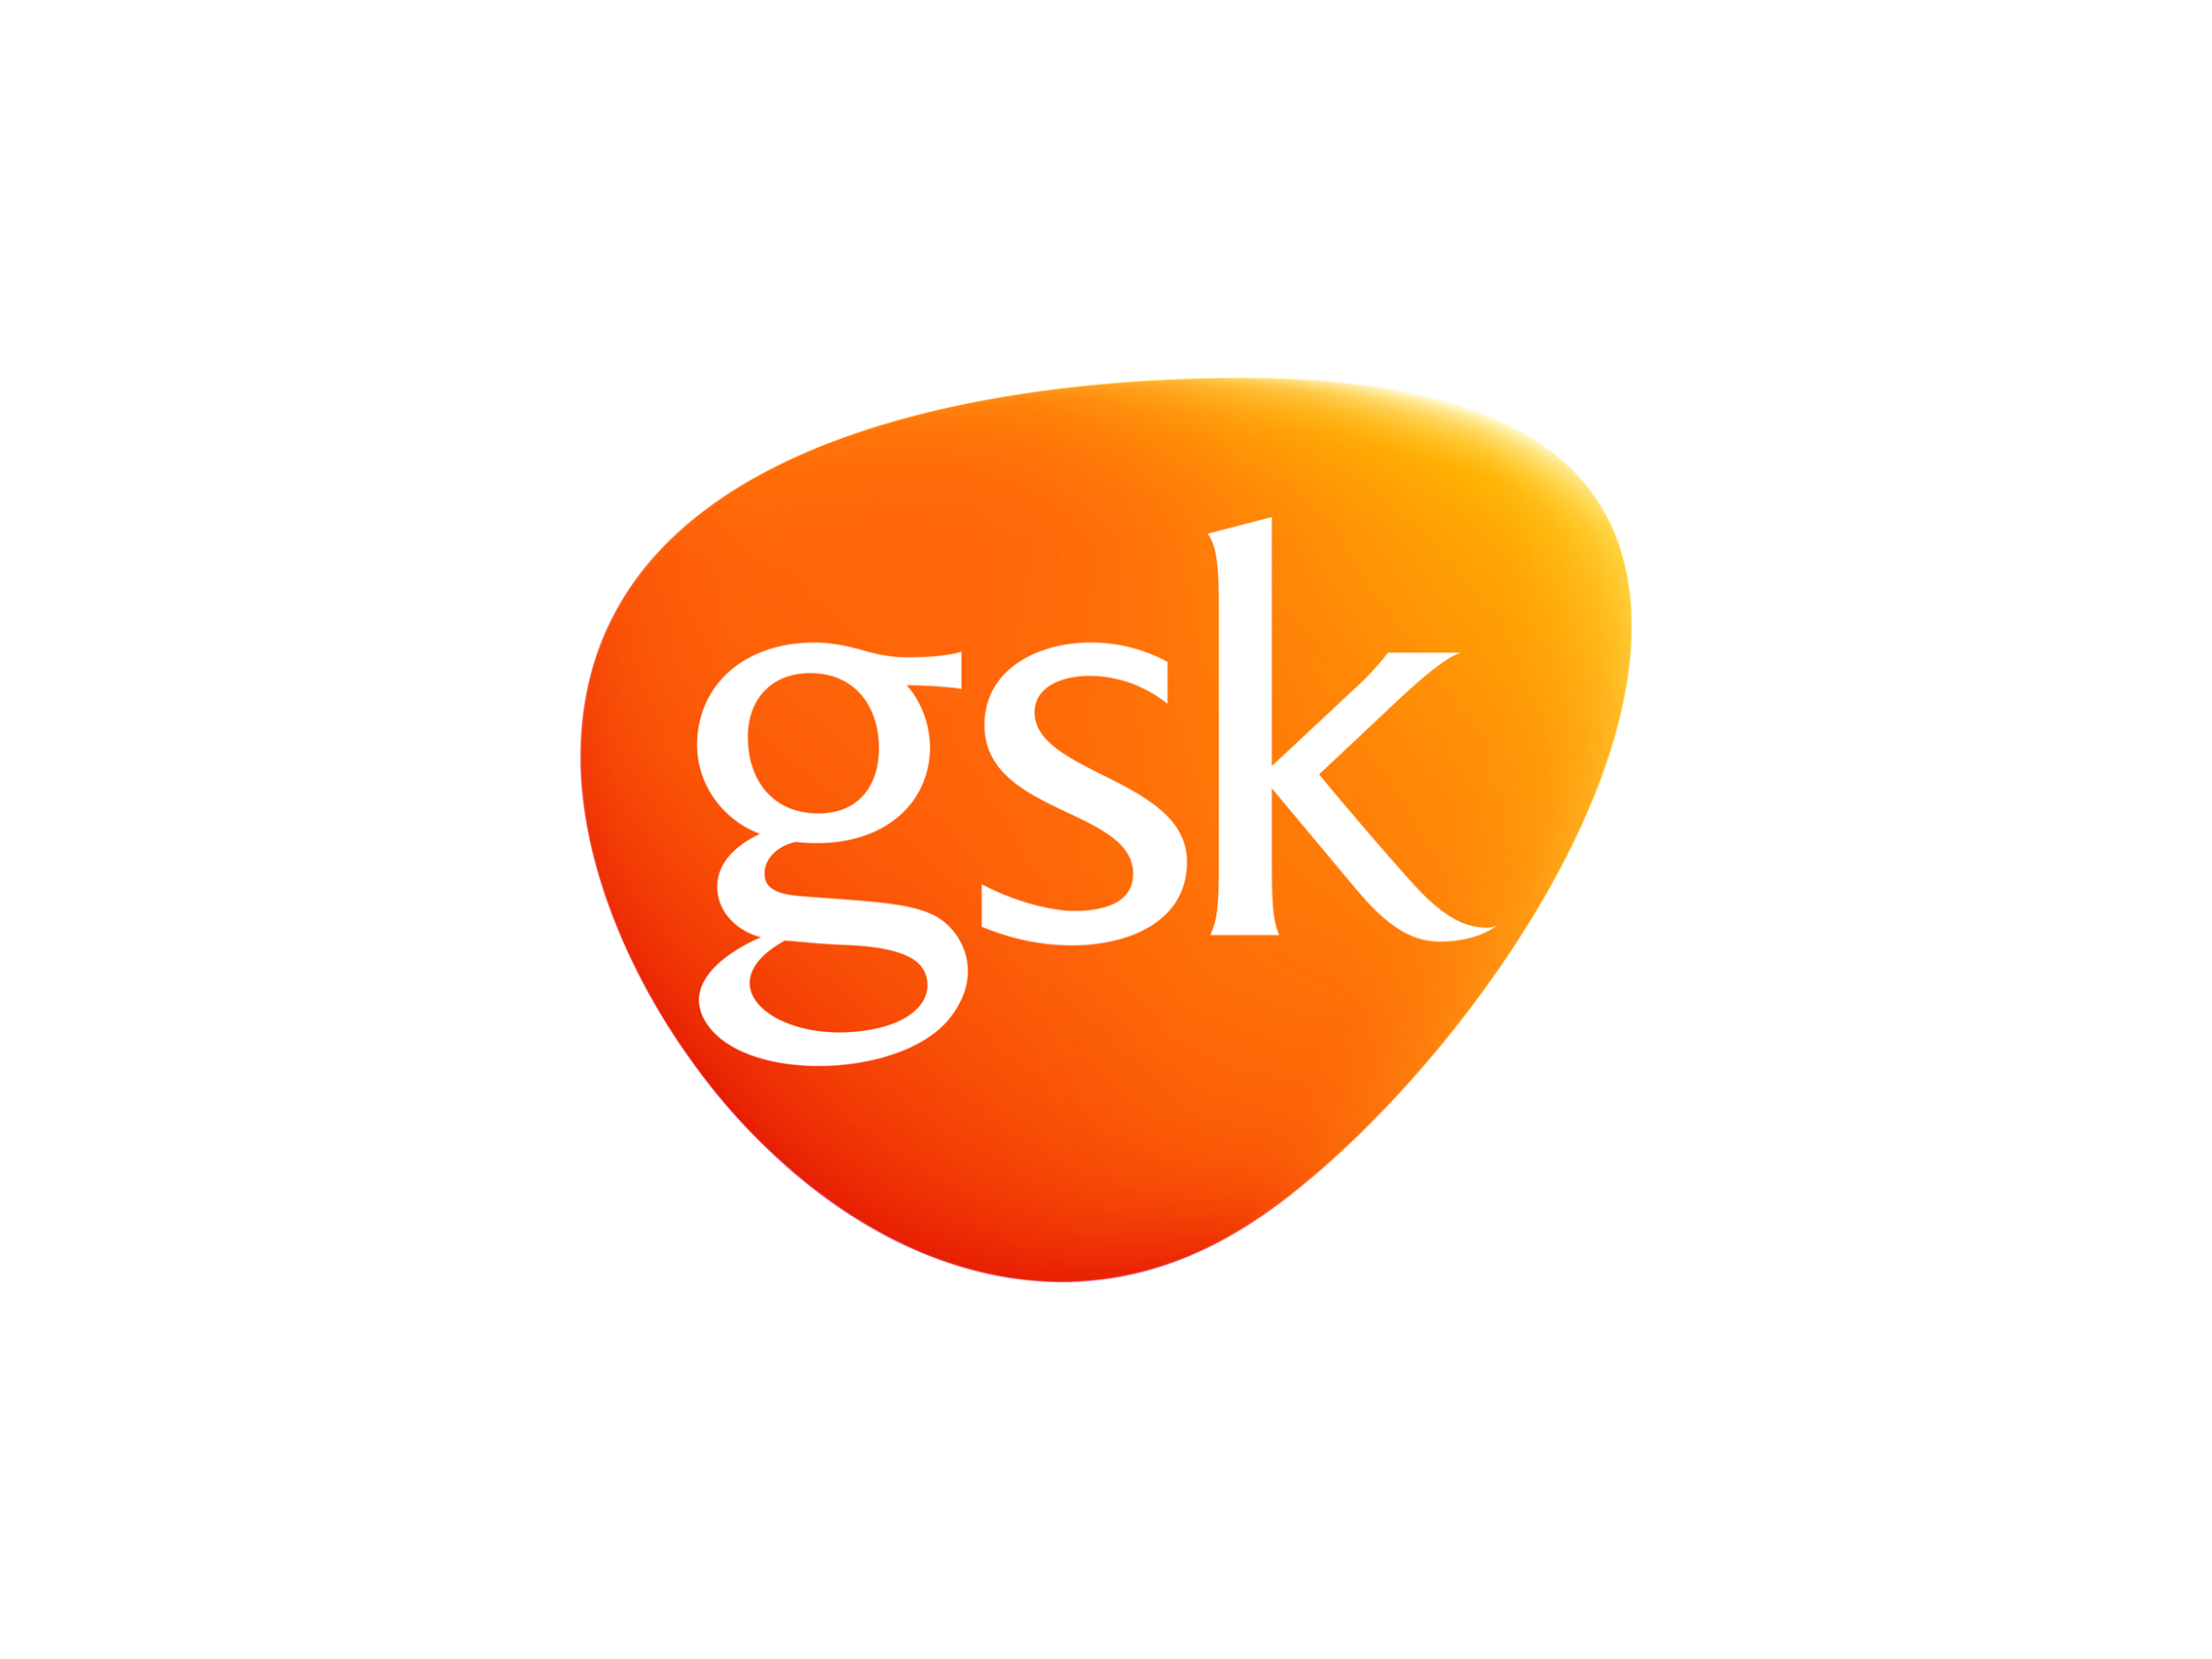 Gsk Logo Vector PNG - 109112